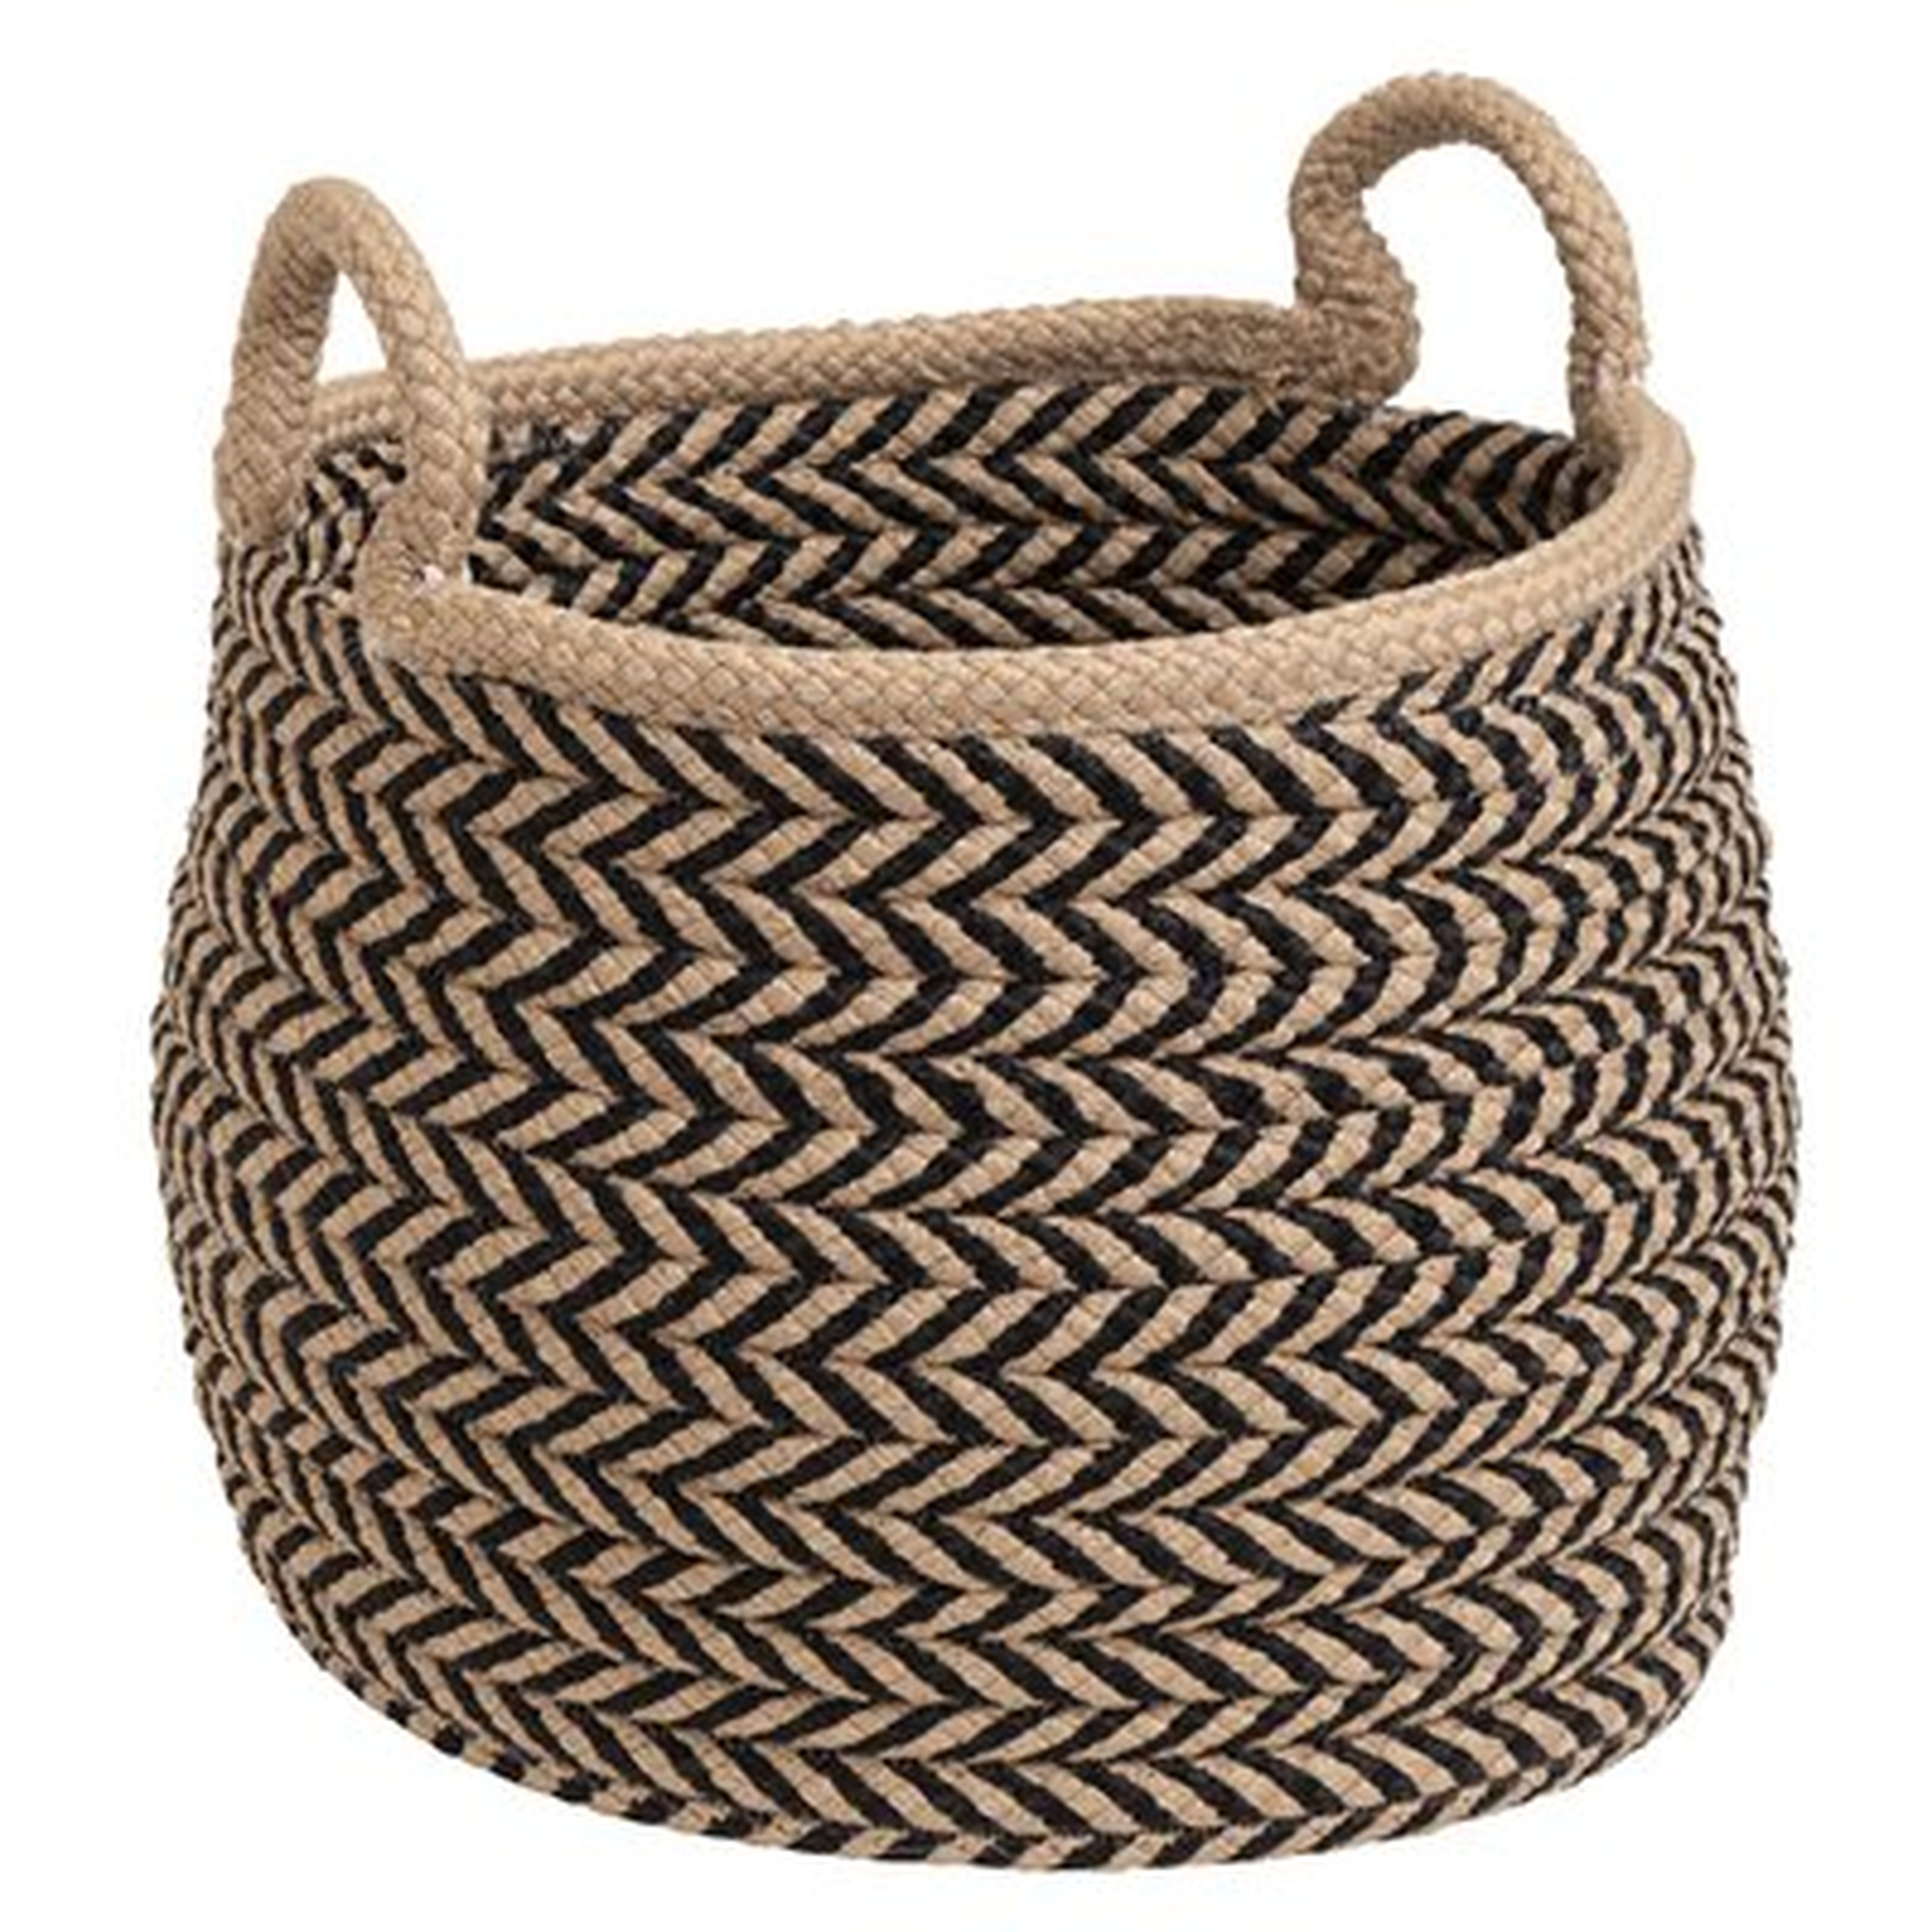 Preve Fabric Basket - Wayfair